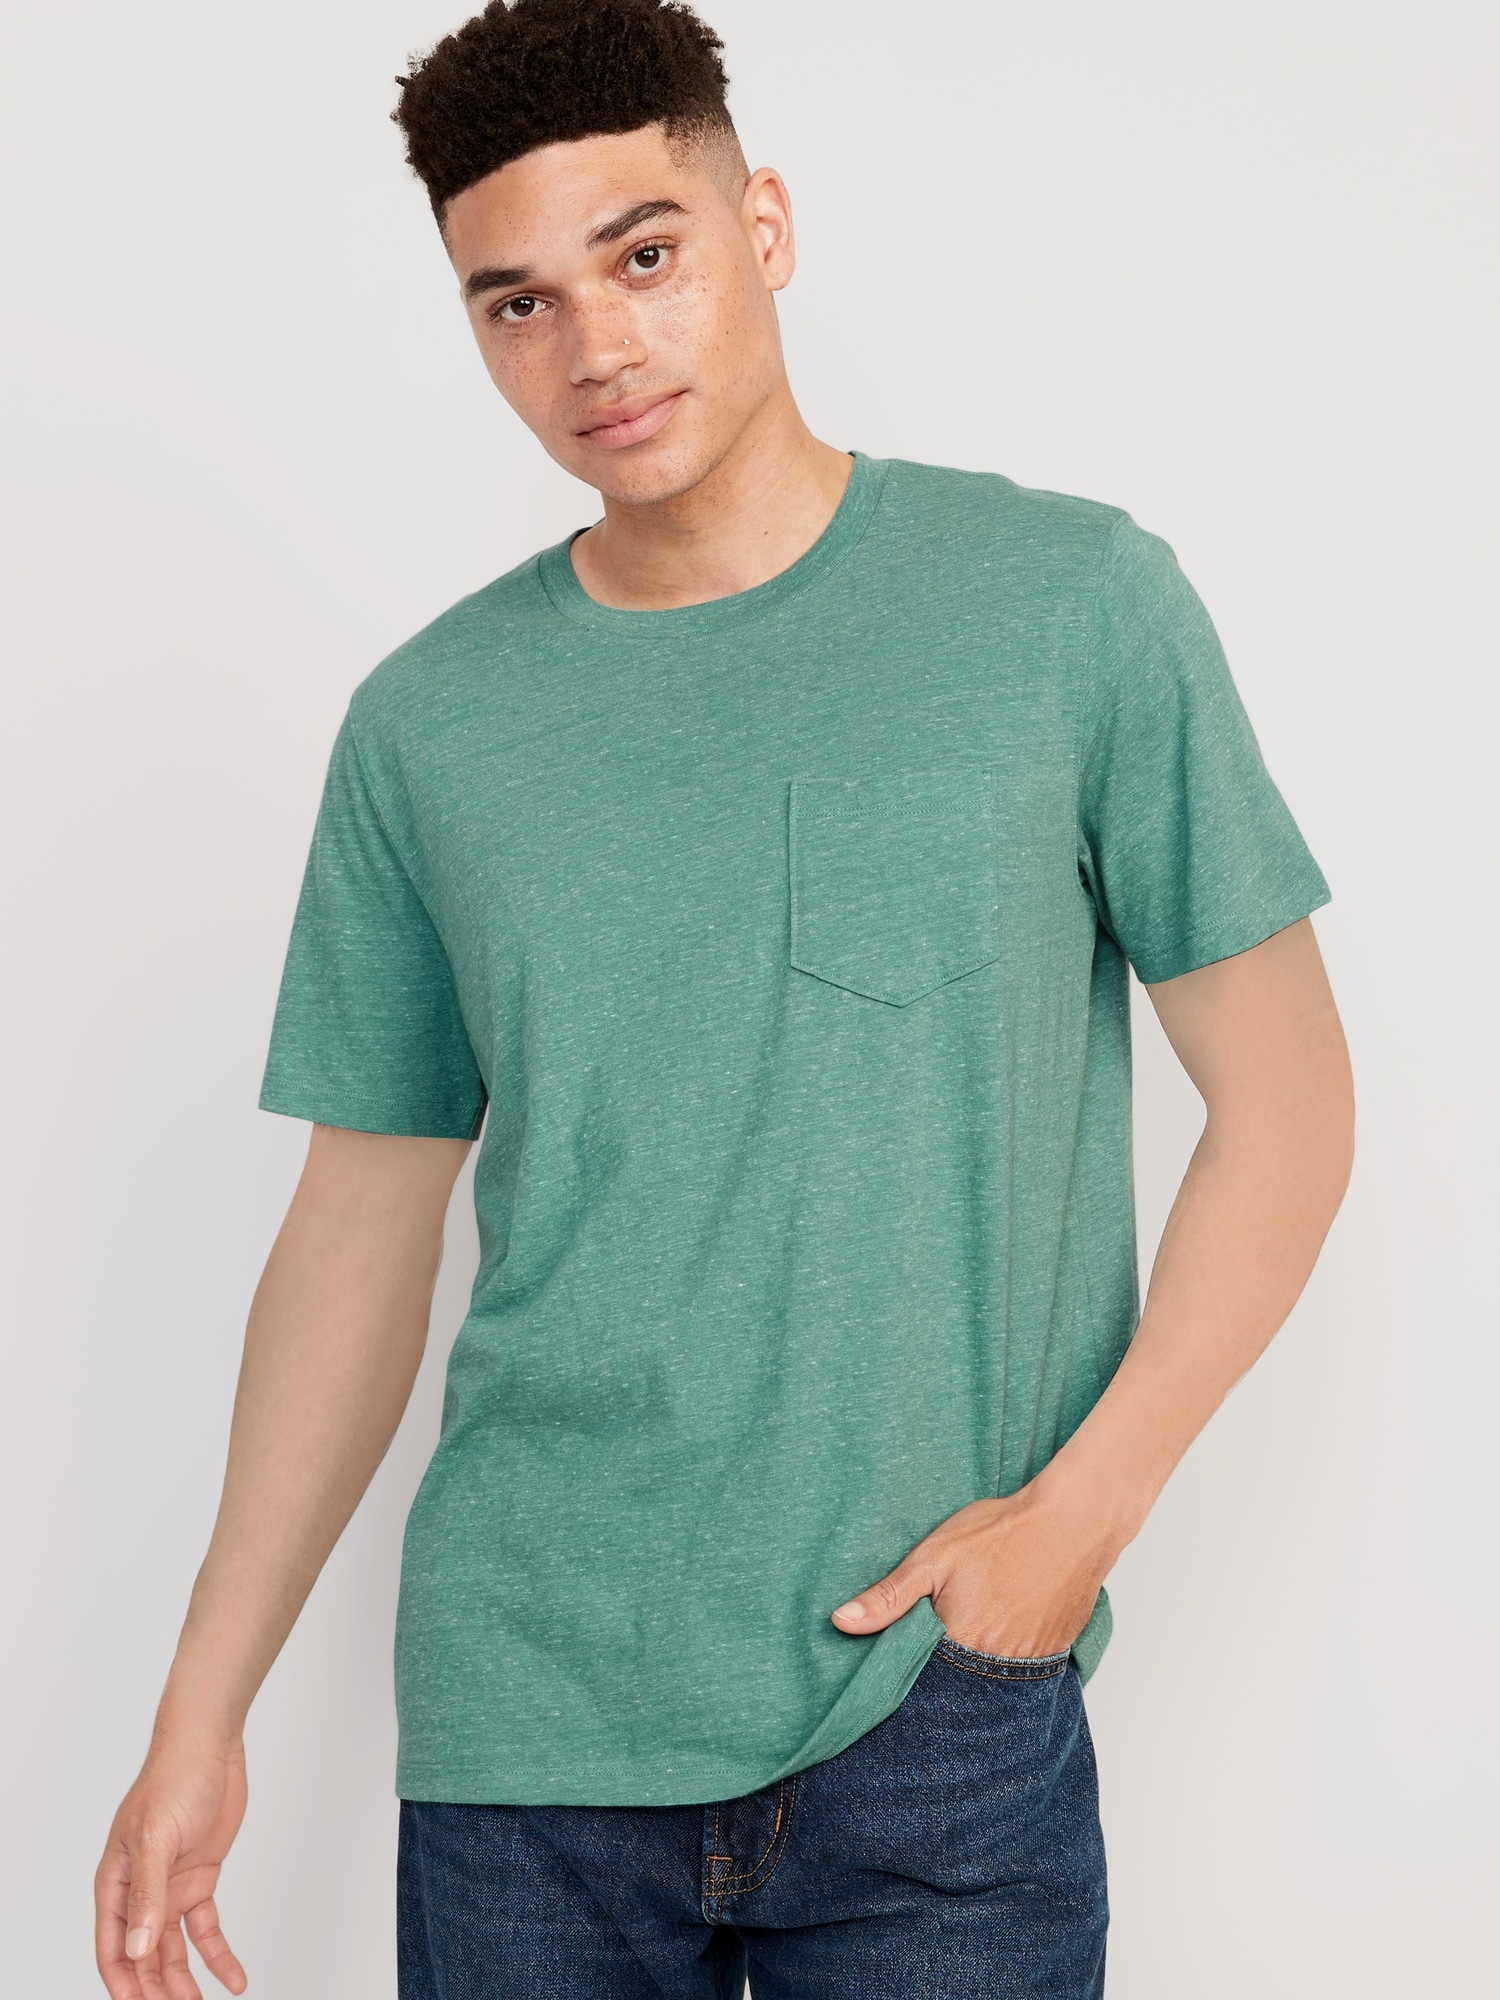 Old Navy Soft-Washed Pocket T-Shirt for Men green. 1